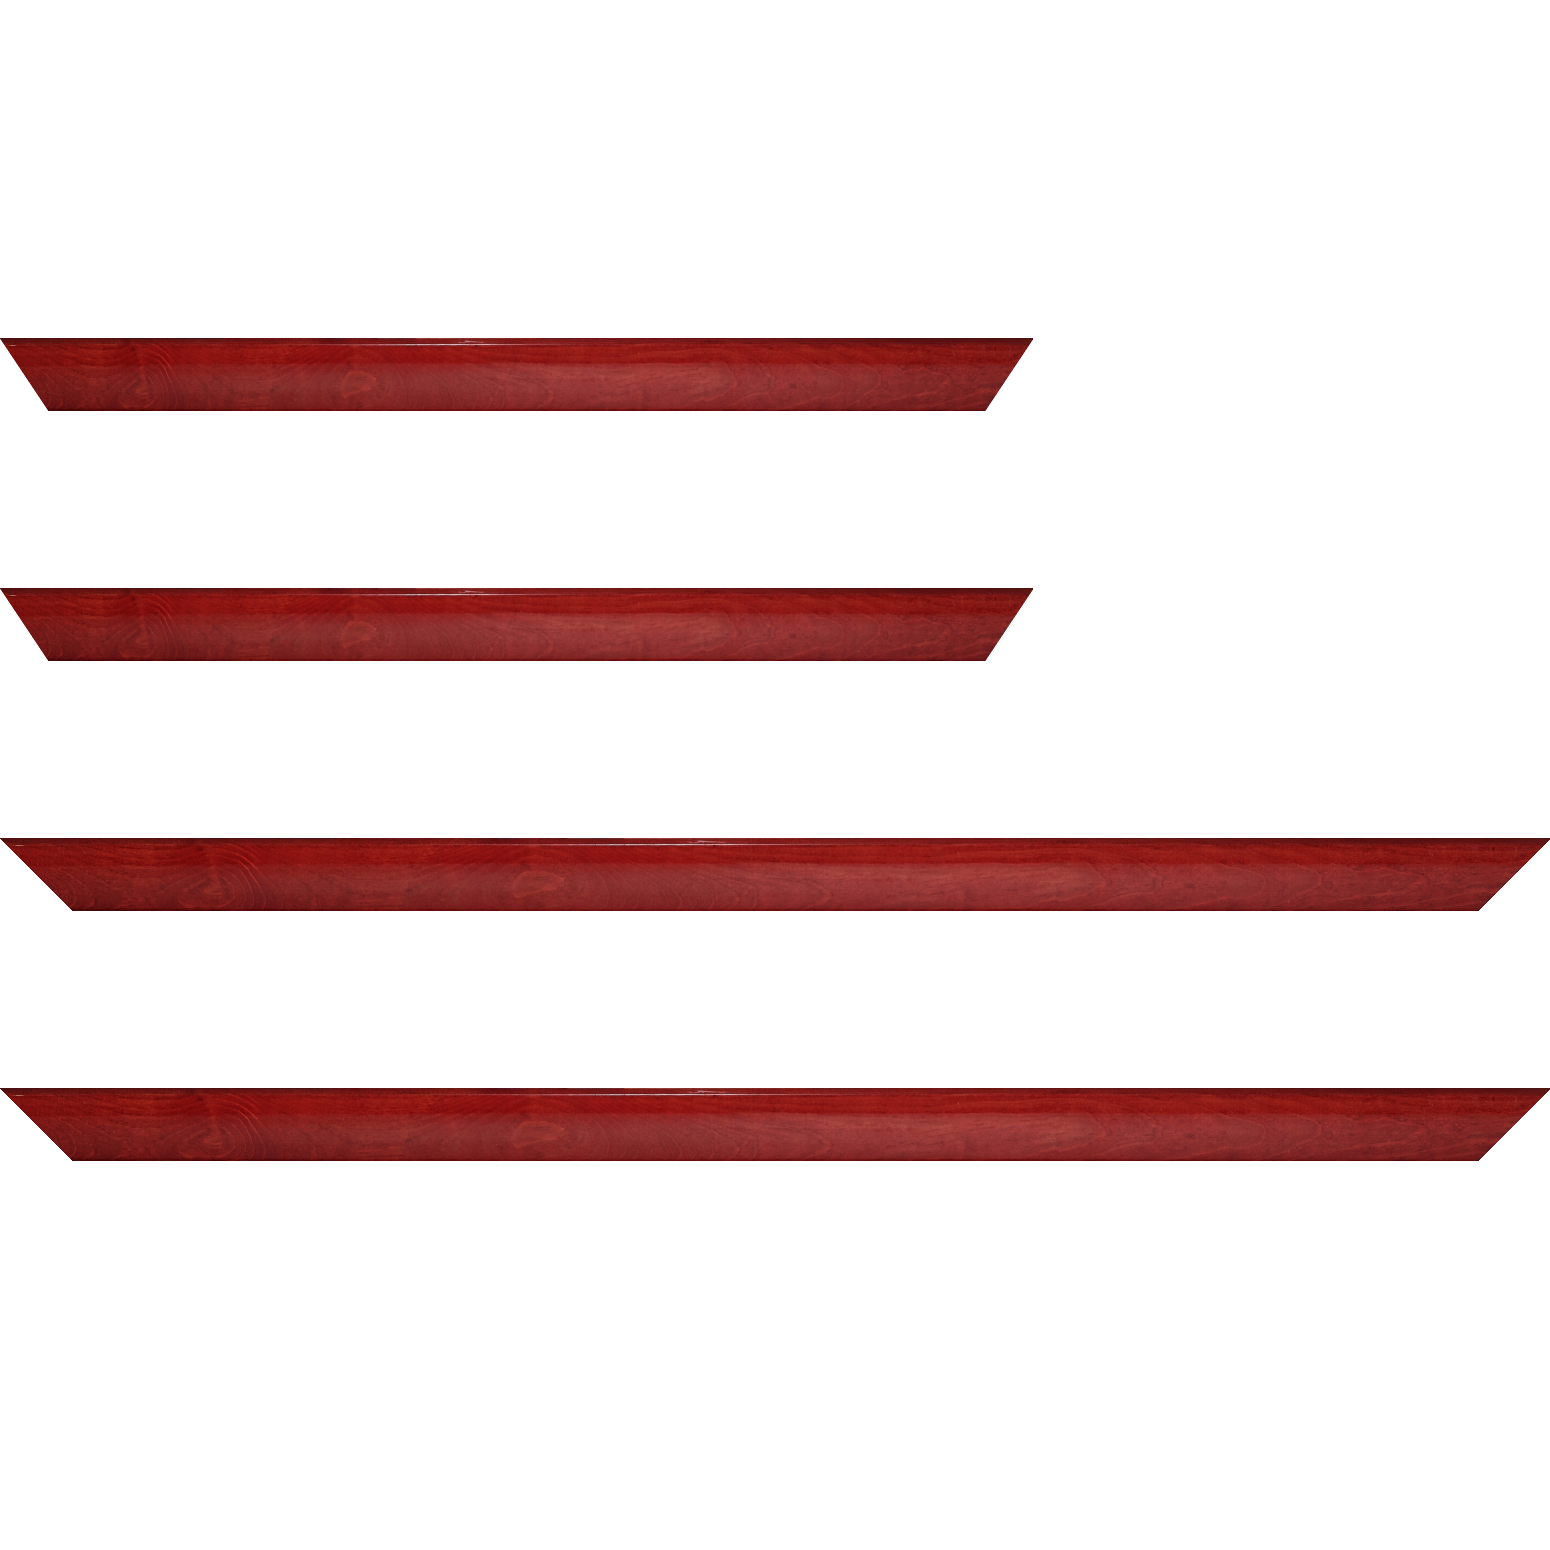 Baguette bois profil arrondi en pente plongeant largeur 2.4cm couleur rouge cerise finition vernis brillant,veine du bois  apparent (pin) ,